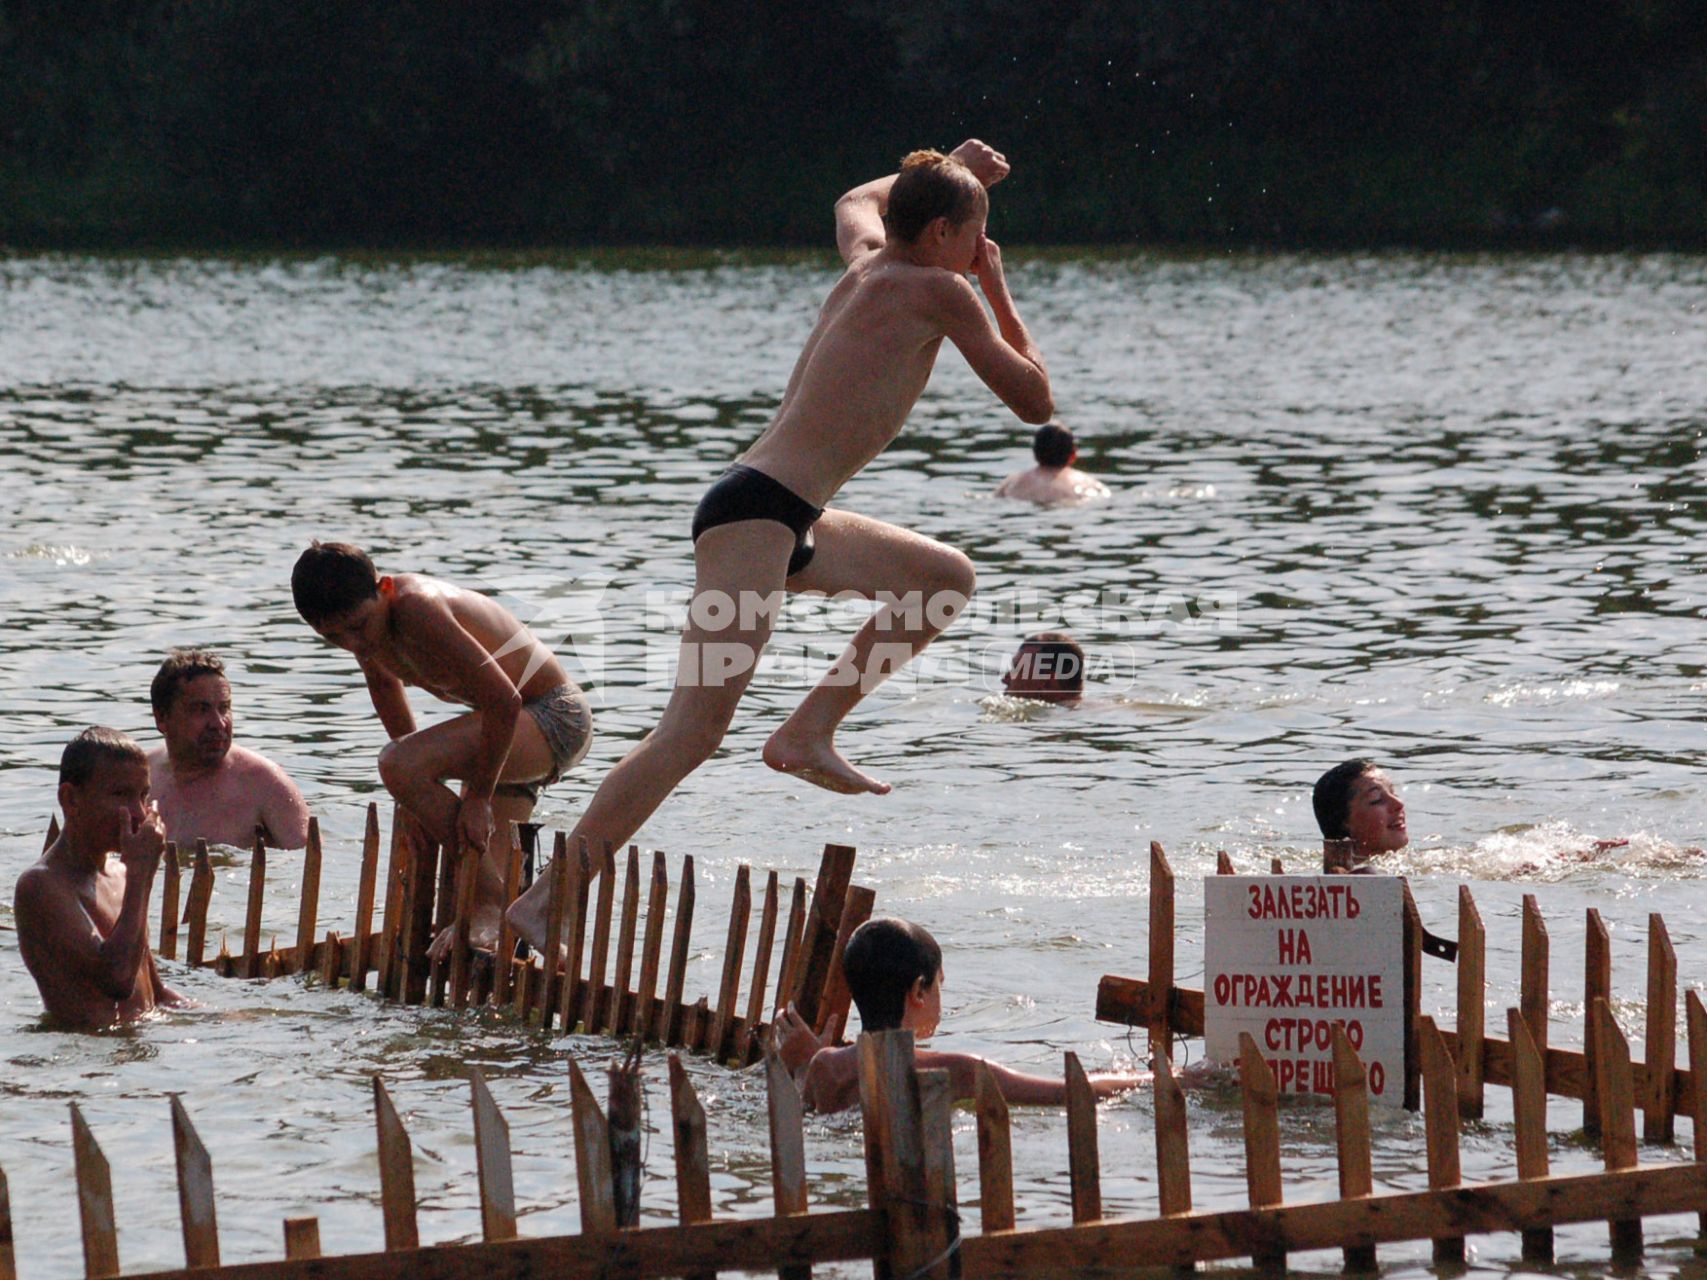 Мальчик прыгает в воду с ограждения на котором прикреплена надпись: `Залезать на ограждение строго запрещено`.